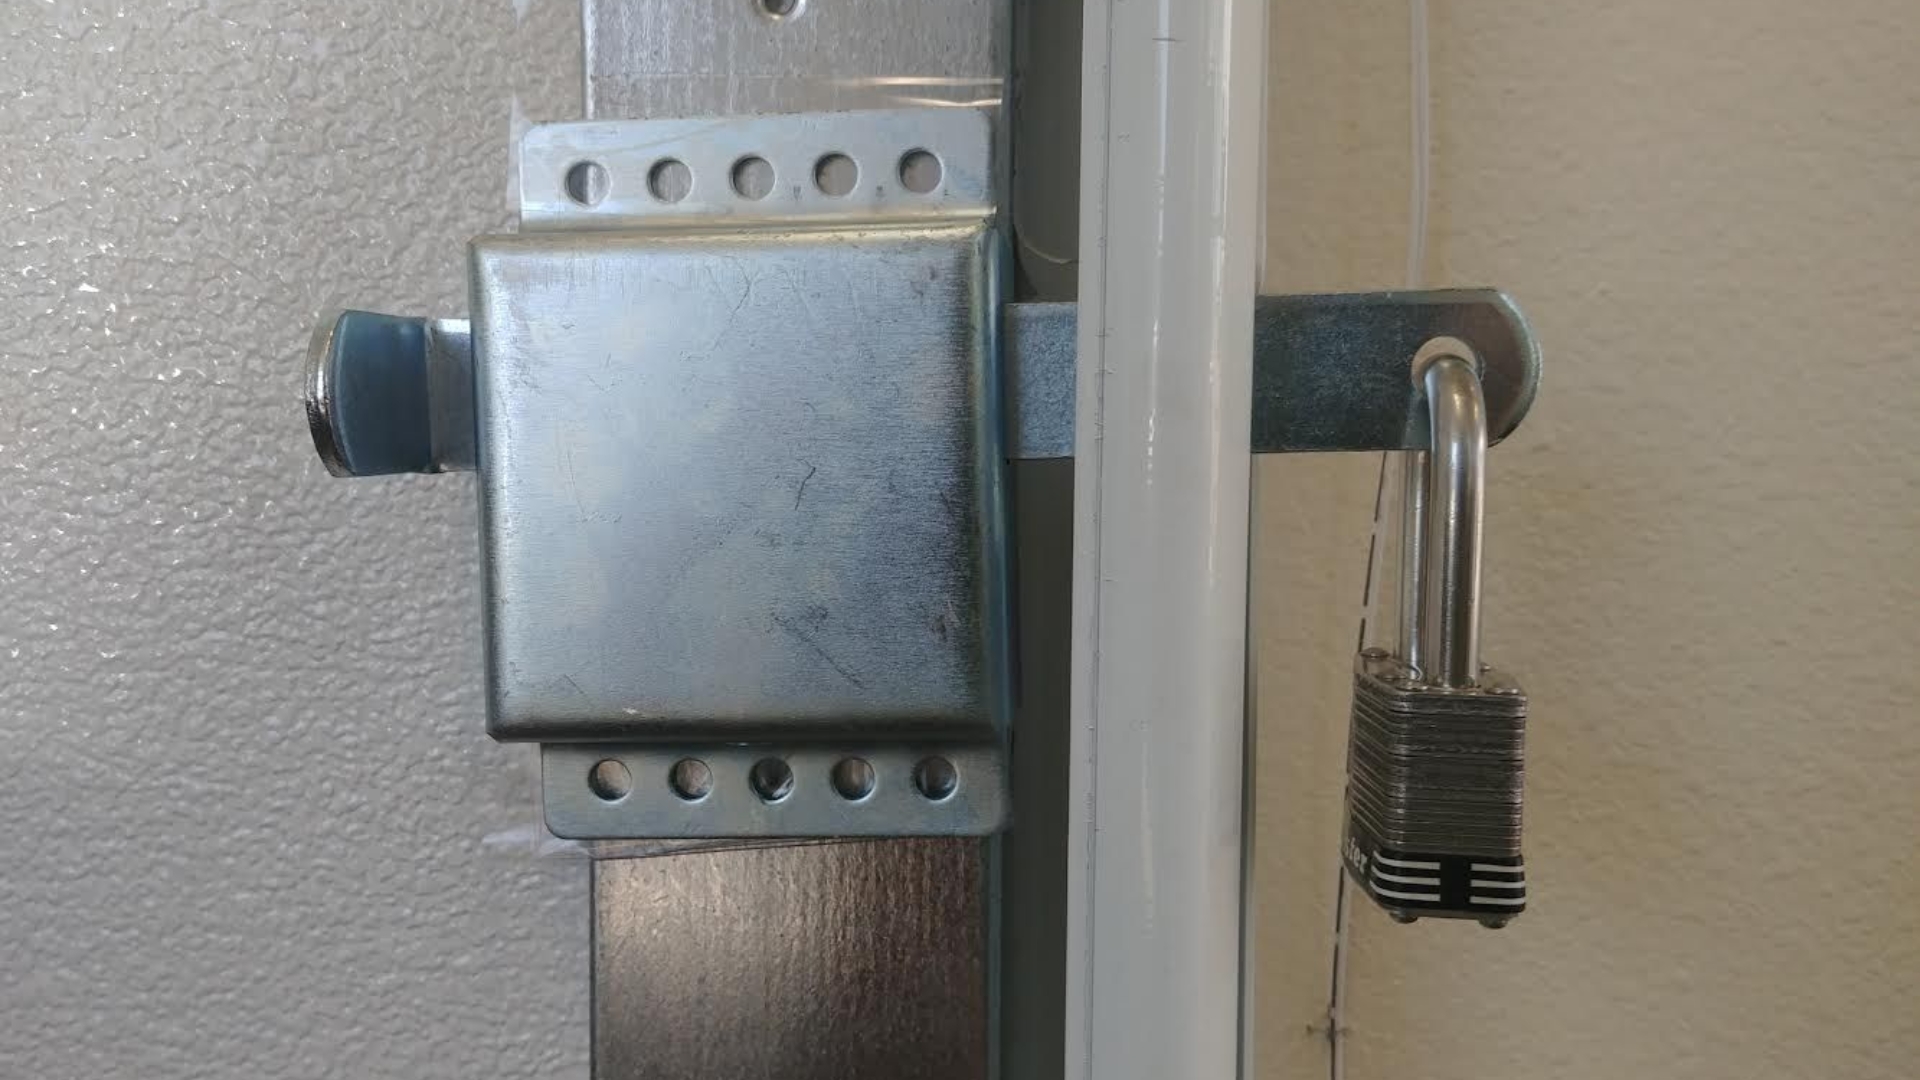 Garage door locks installed in a garage door